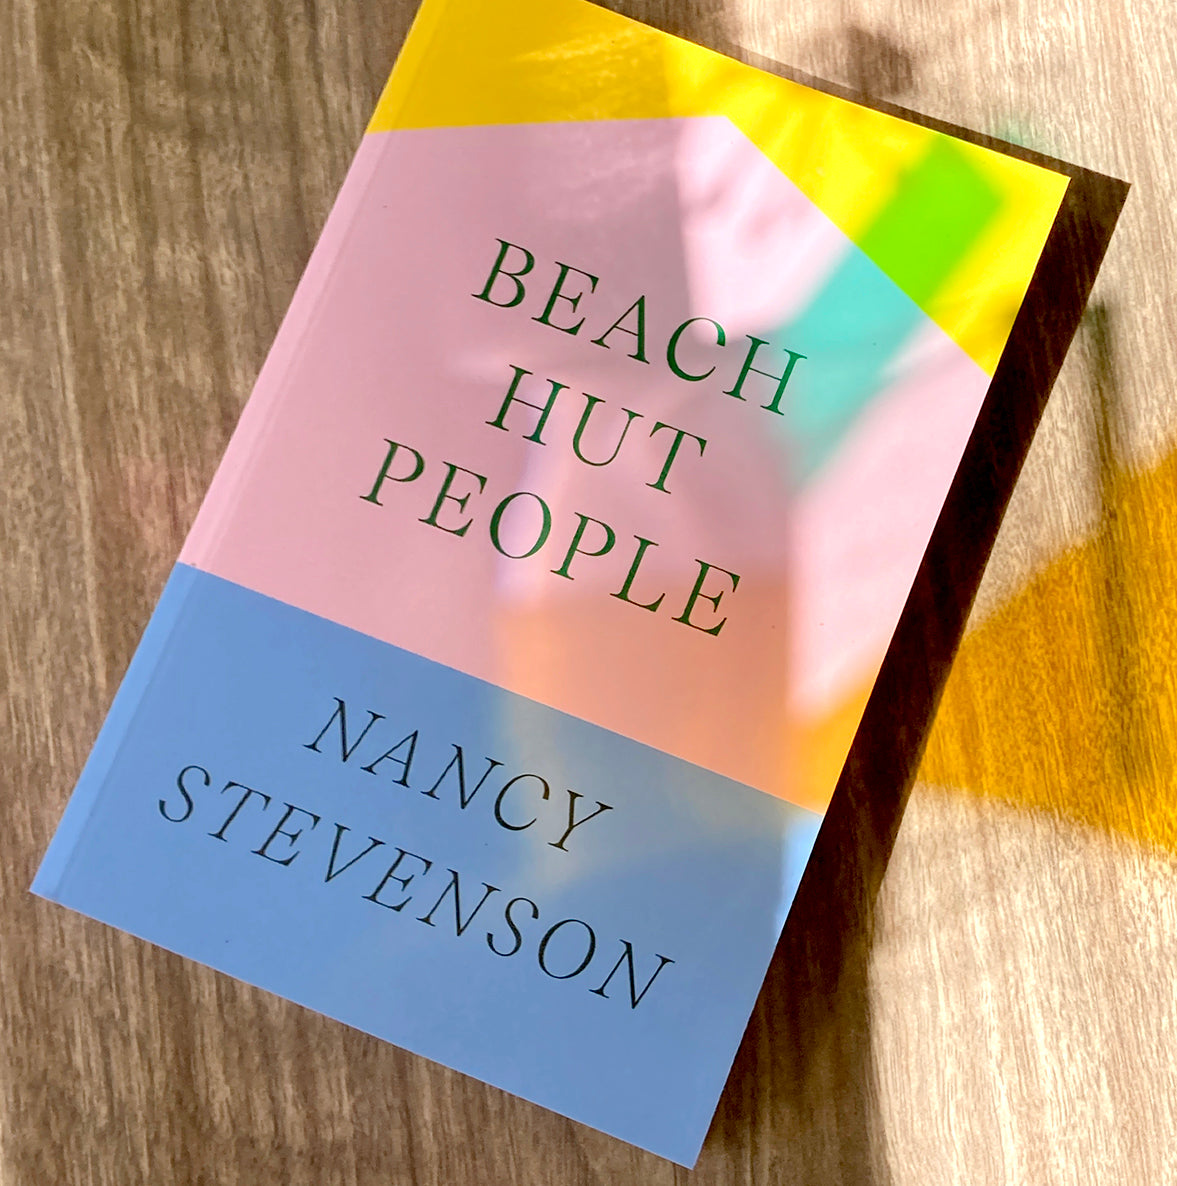 Beach Hut People by Nancy Stevenson